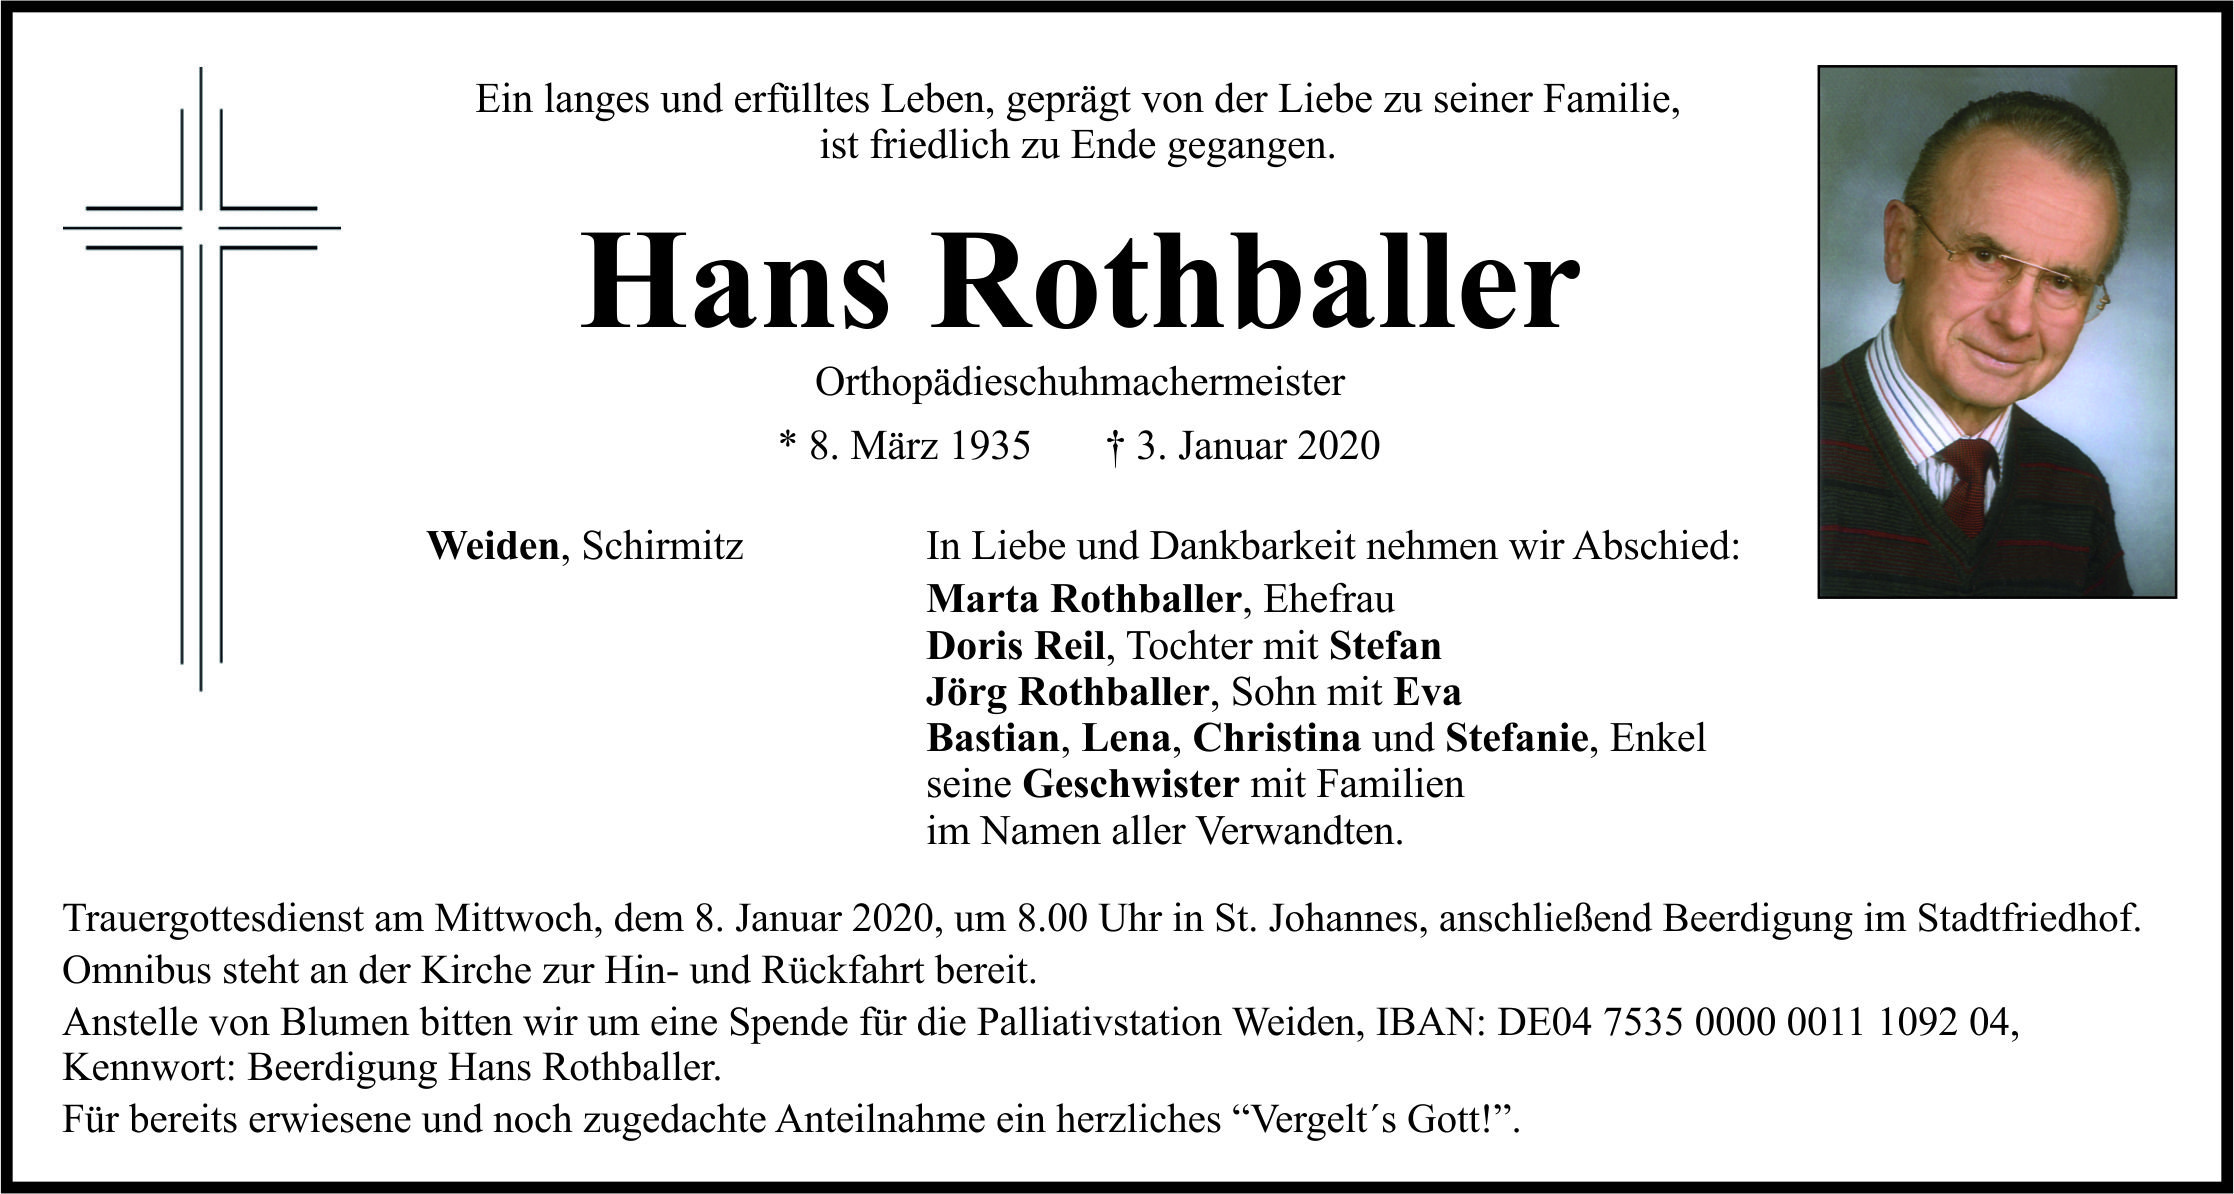 Traueranzeige Hans Rothballer, Weiden Schirmitz